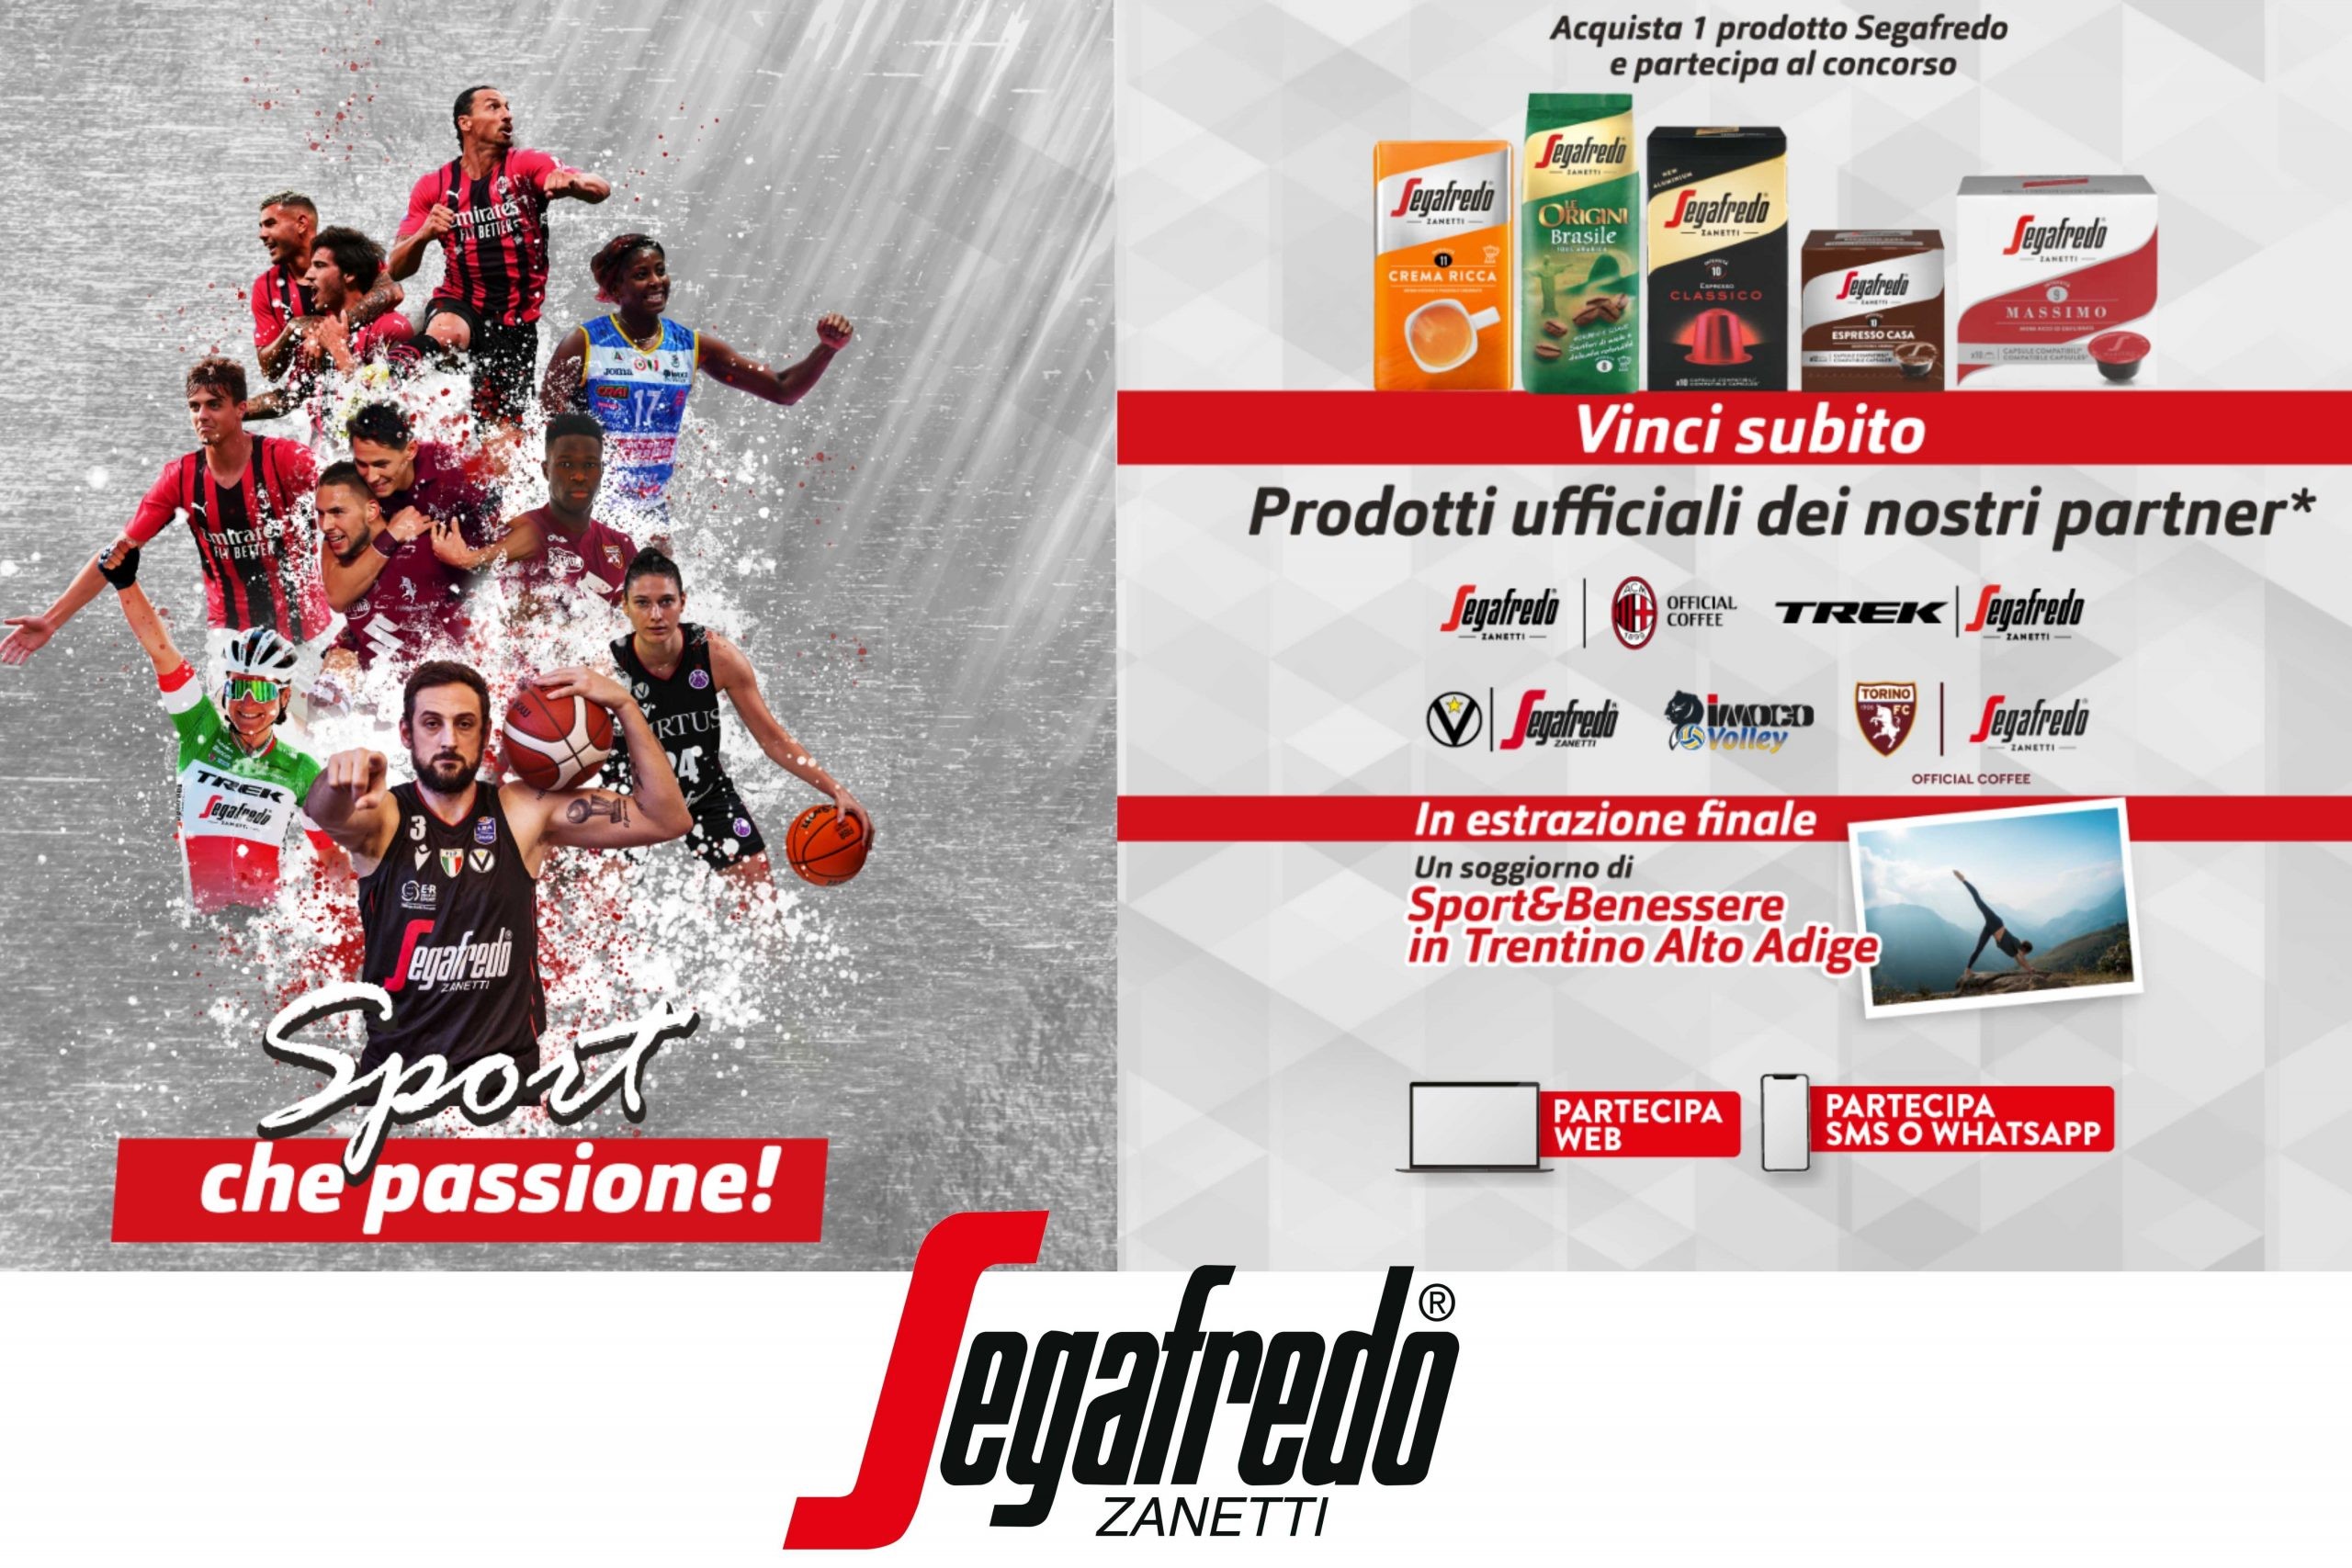 Concorso Segafredo “Sport che passione”: come vincere gadget ufficiali dei partner e un soggiorno in Trentino Alto Adige